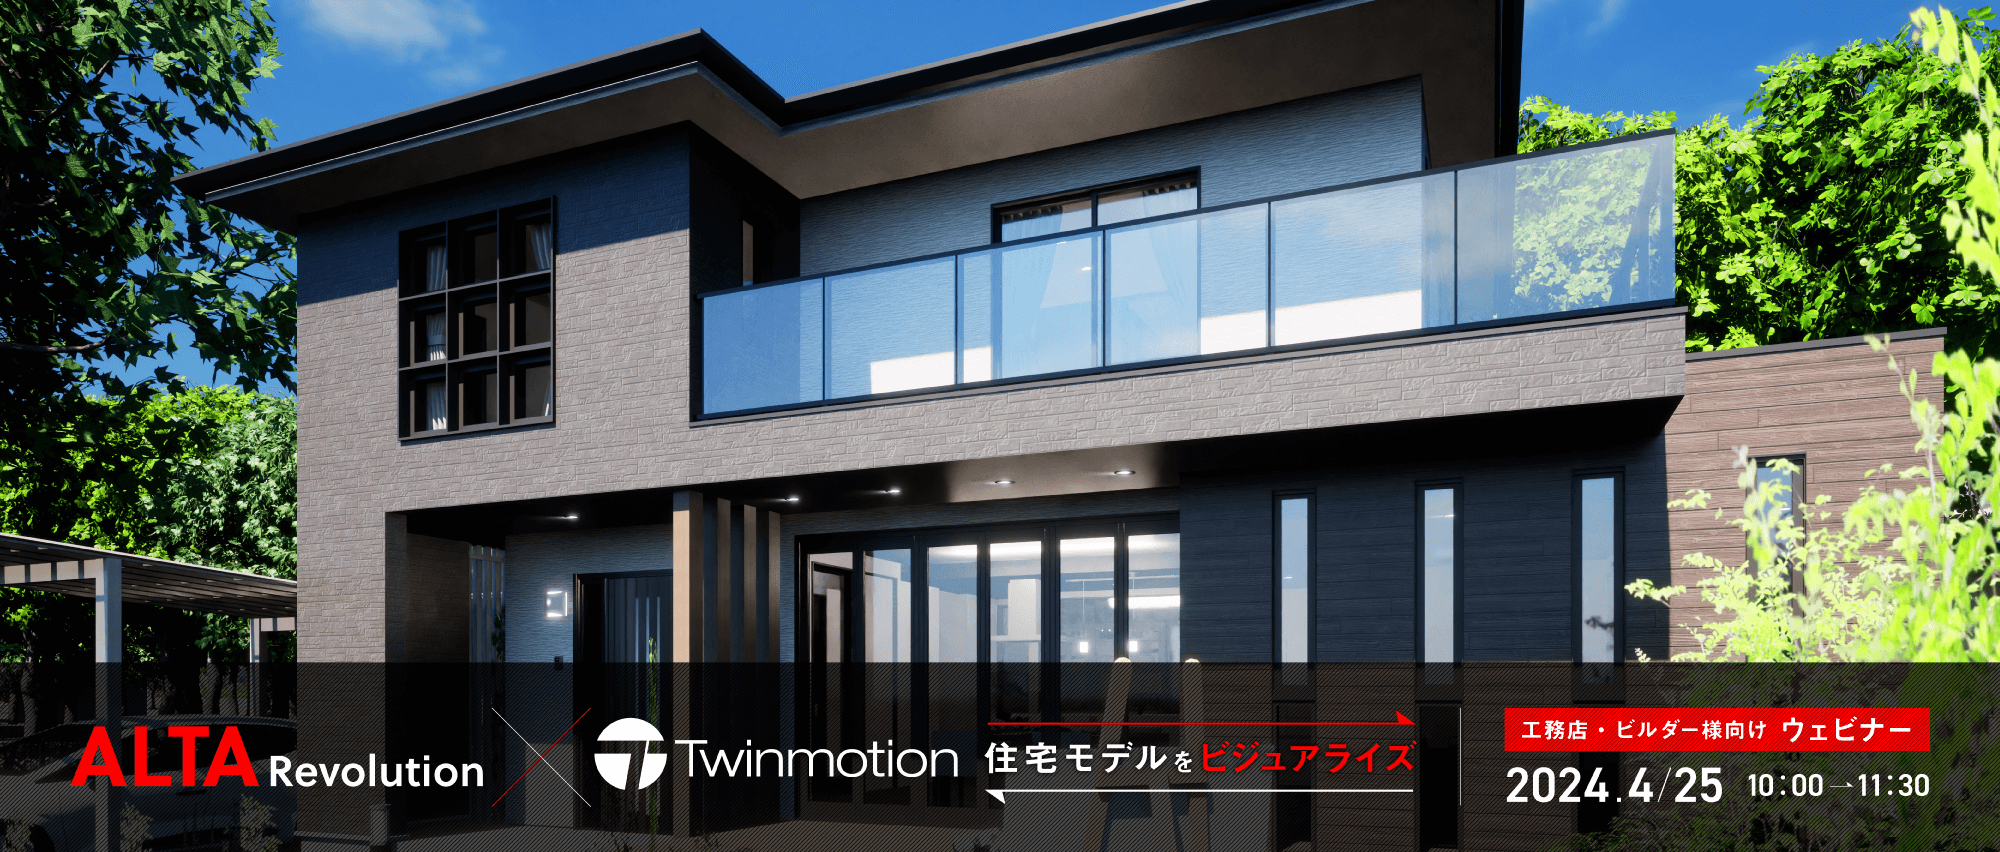 「ALTA × Twinmotion」で住宅モデルをビジュアライズ